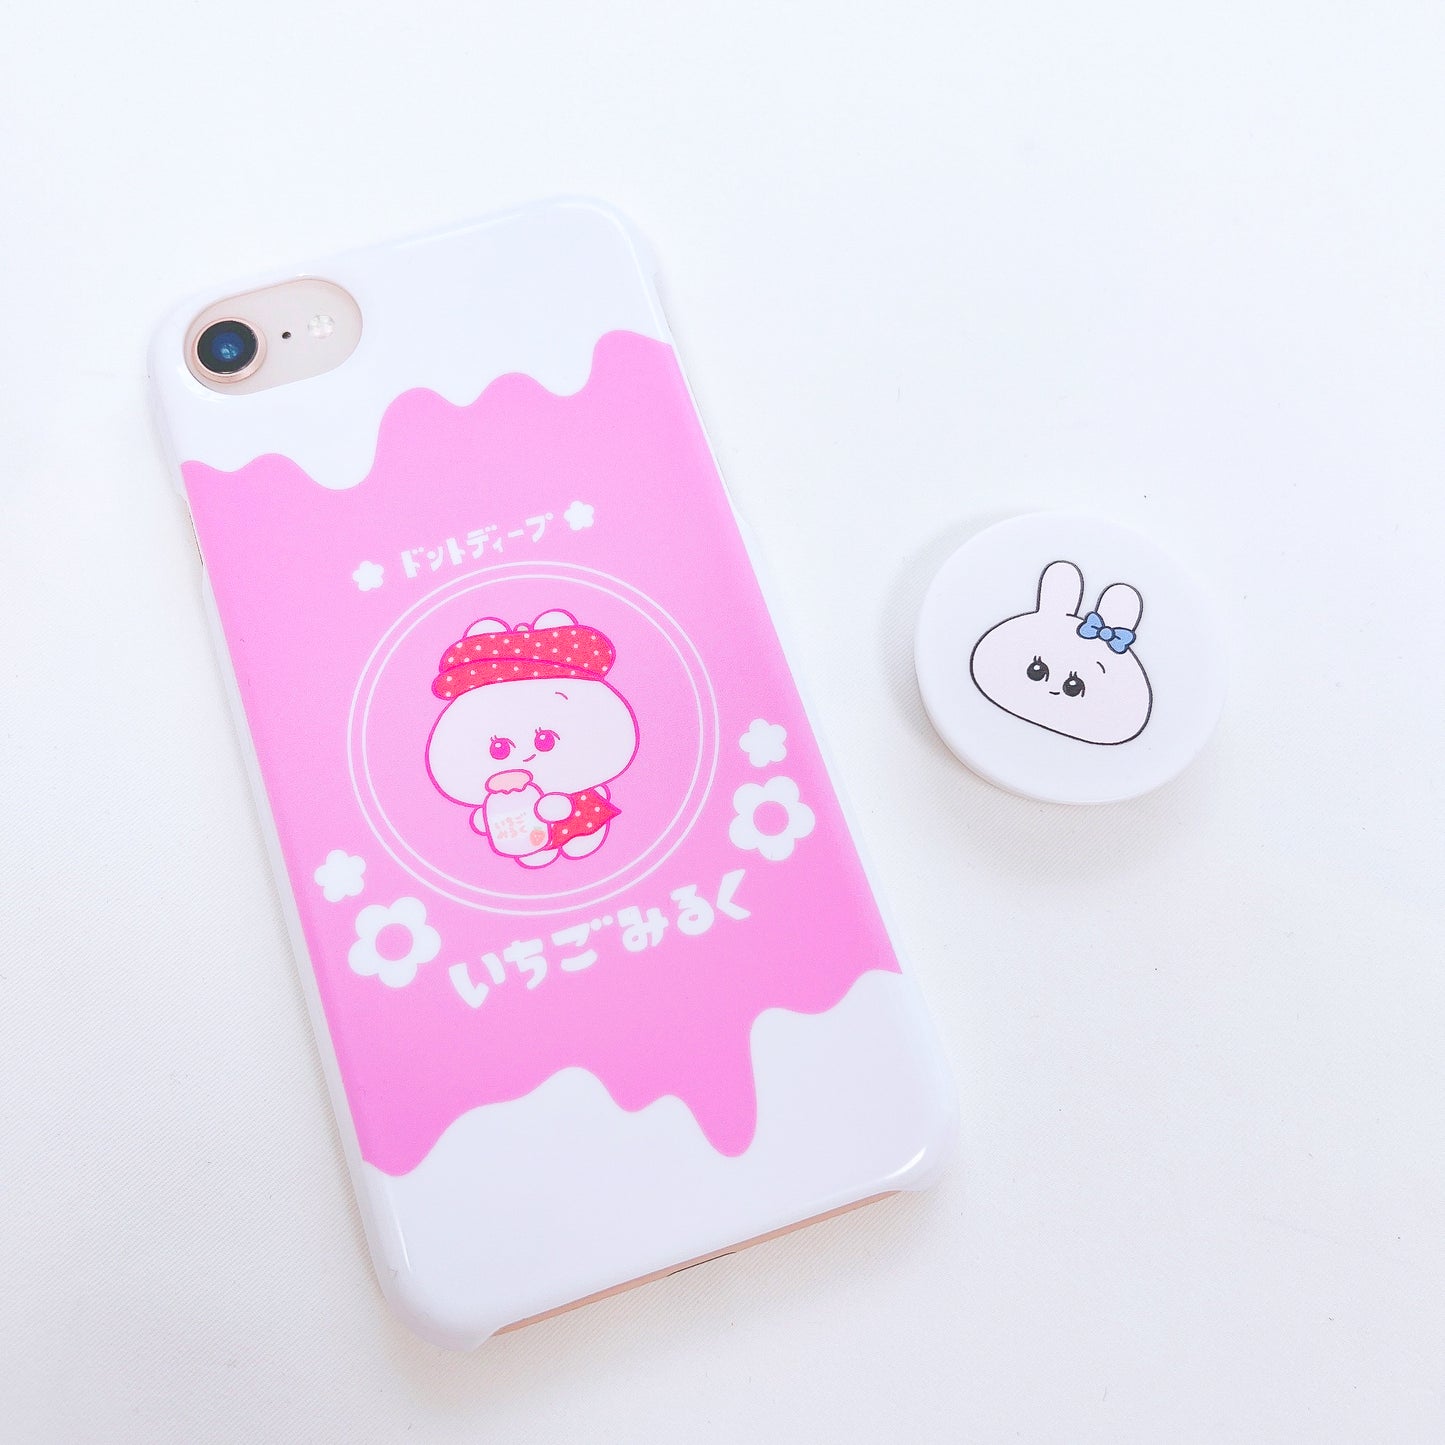 [Asamimi-chan] Smartphone-Hülle kompatibel mit fast allen Modellen (Ichigo Milk) Rakuten Mobile Series [Auf Bestellung gefertigt]